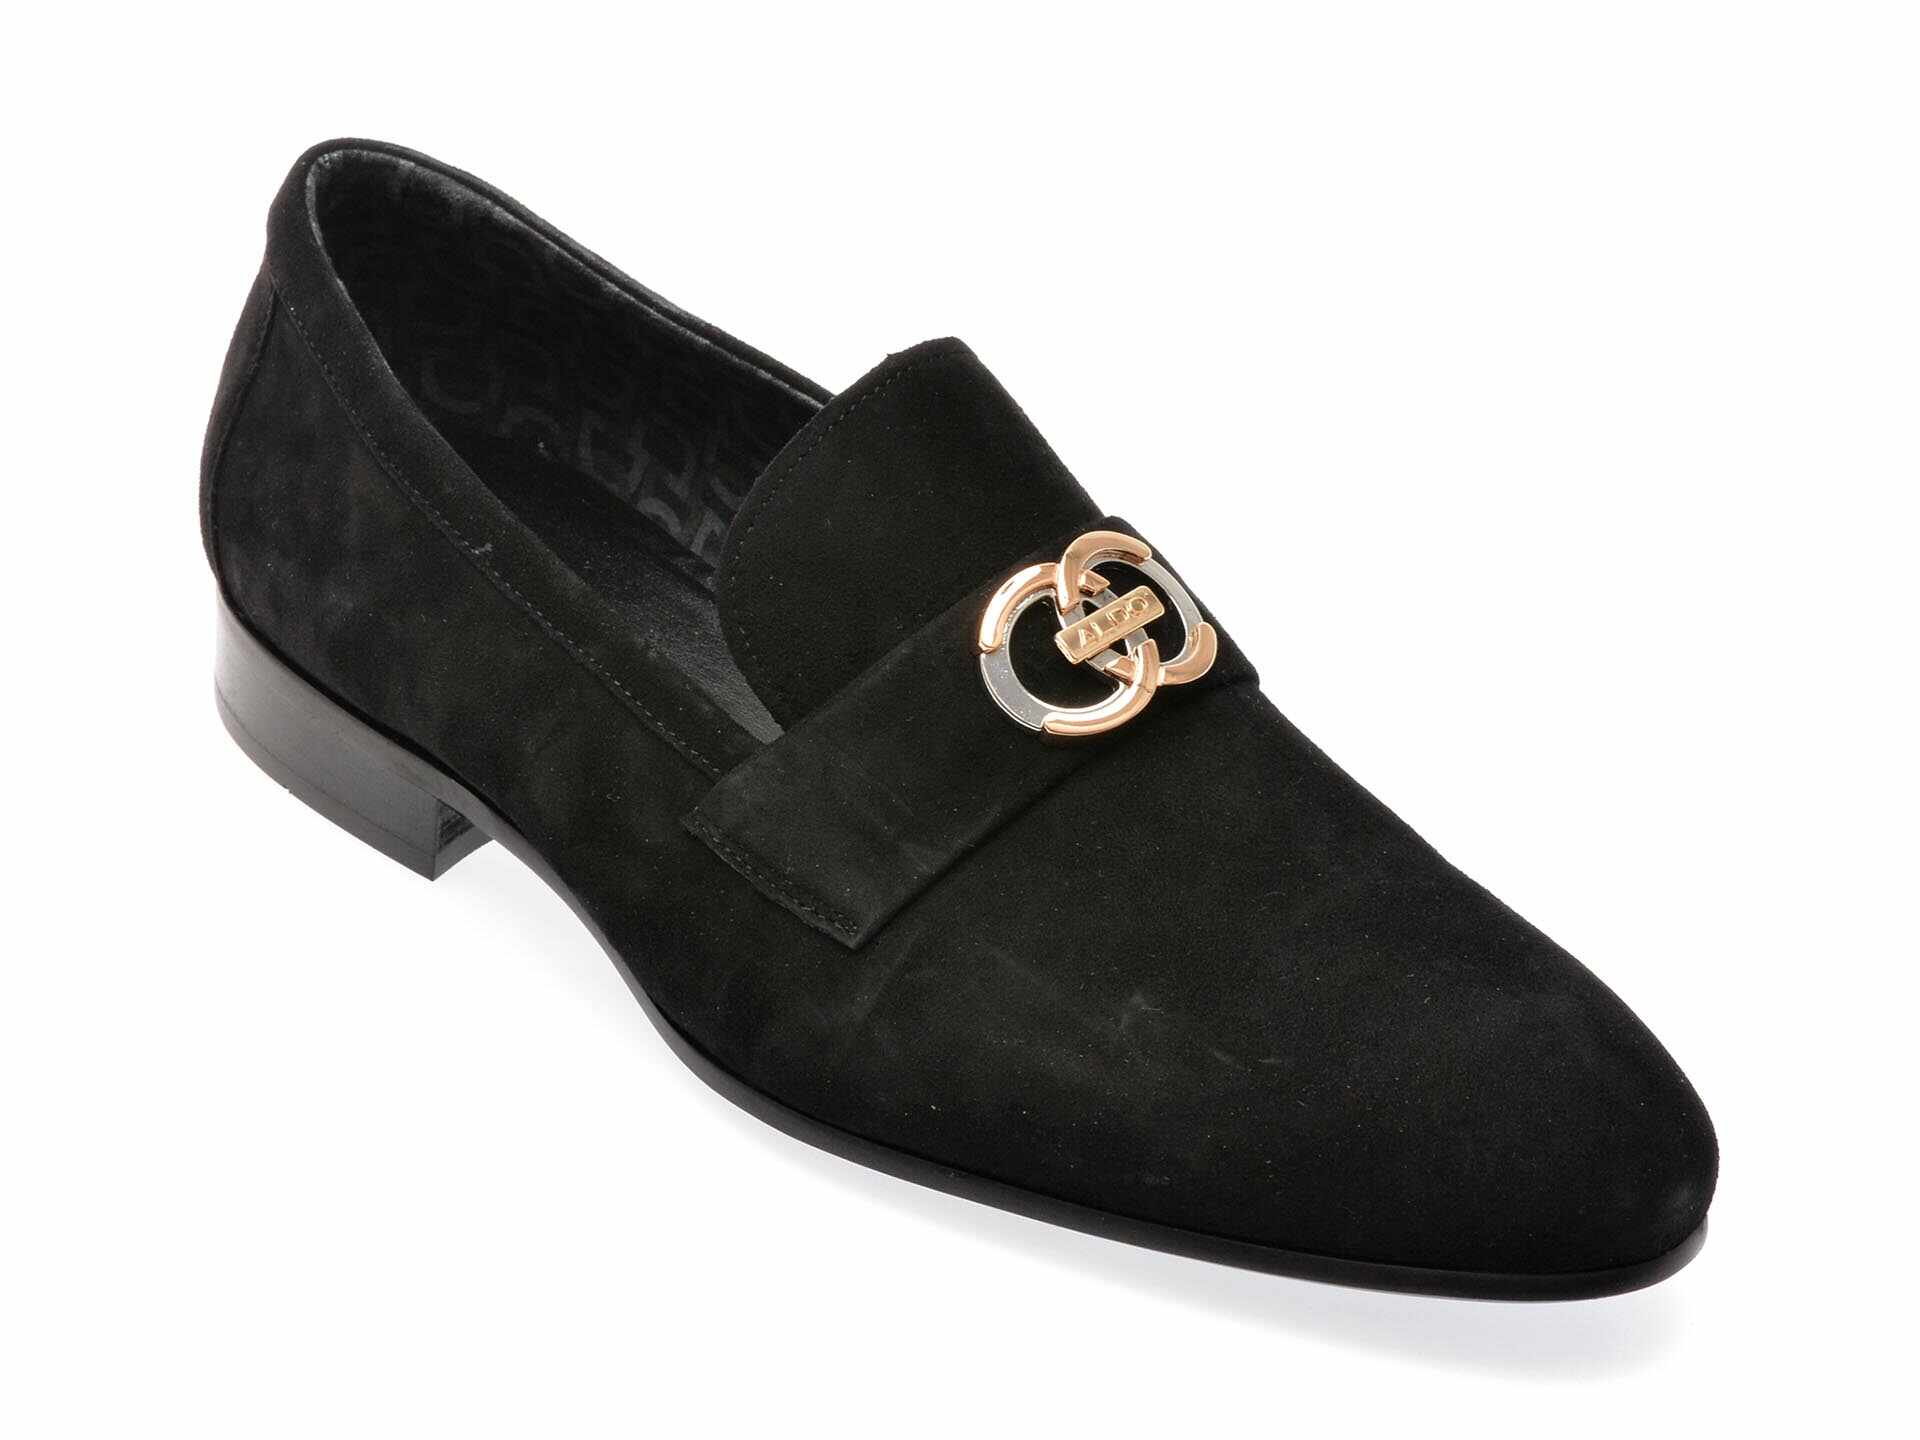 Pantofi eleganti ALDO negri, 13749021, din piele intoarsa